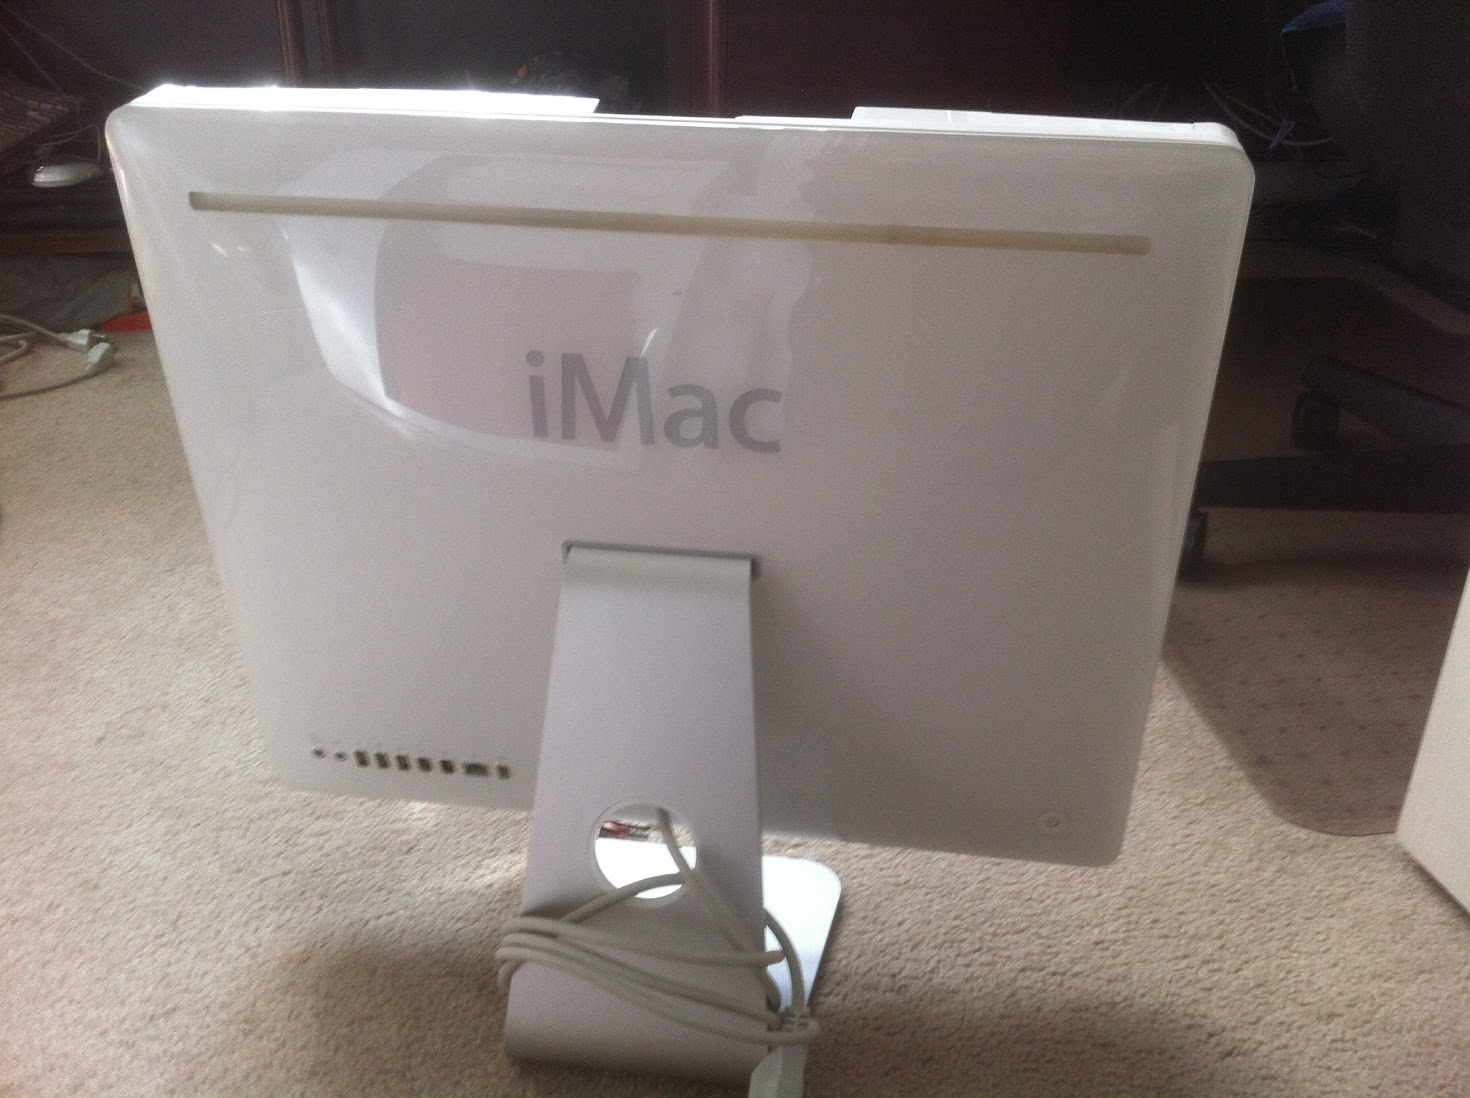 Ersterhernds iMac G5 (iSight 20 A1145) Project | tonymacx86.com